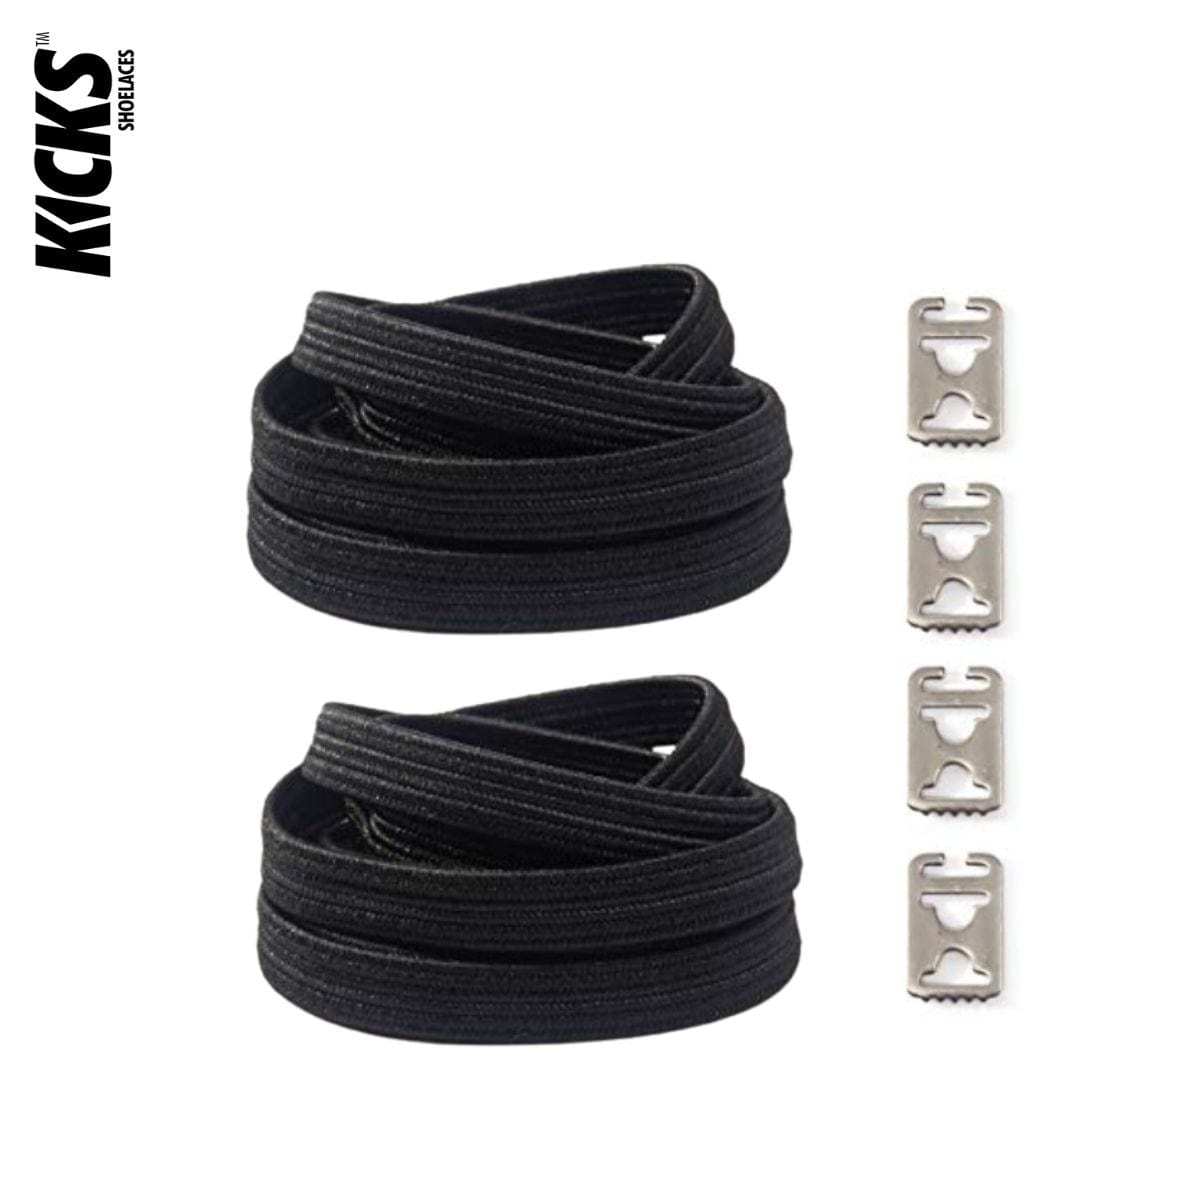 Replacement for Shoe Laces Black No-Tie Shoelaces